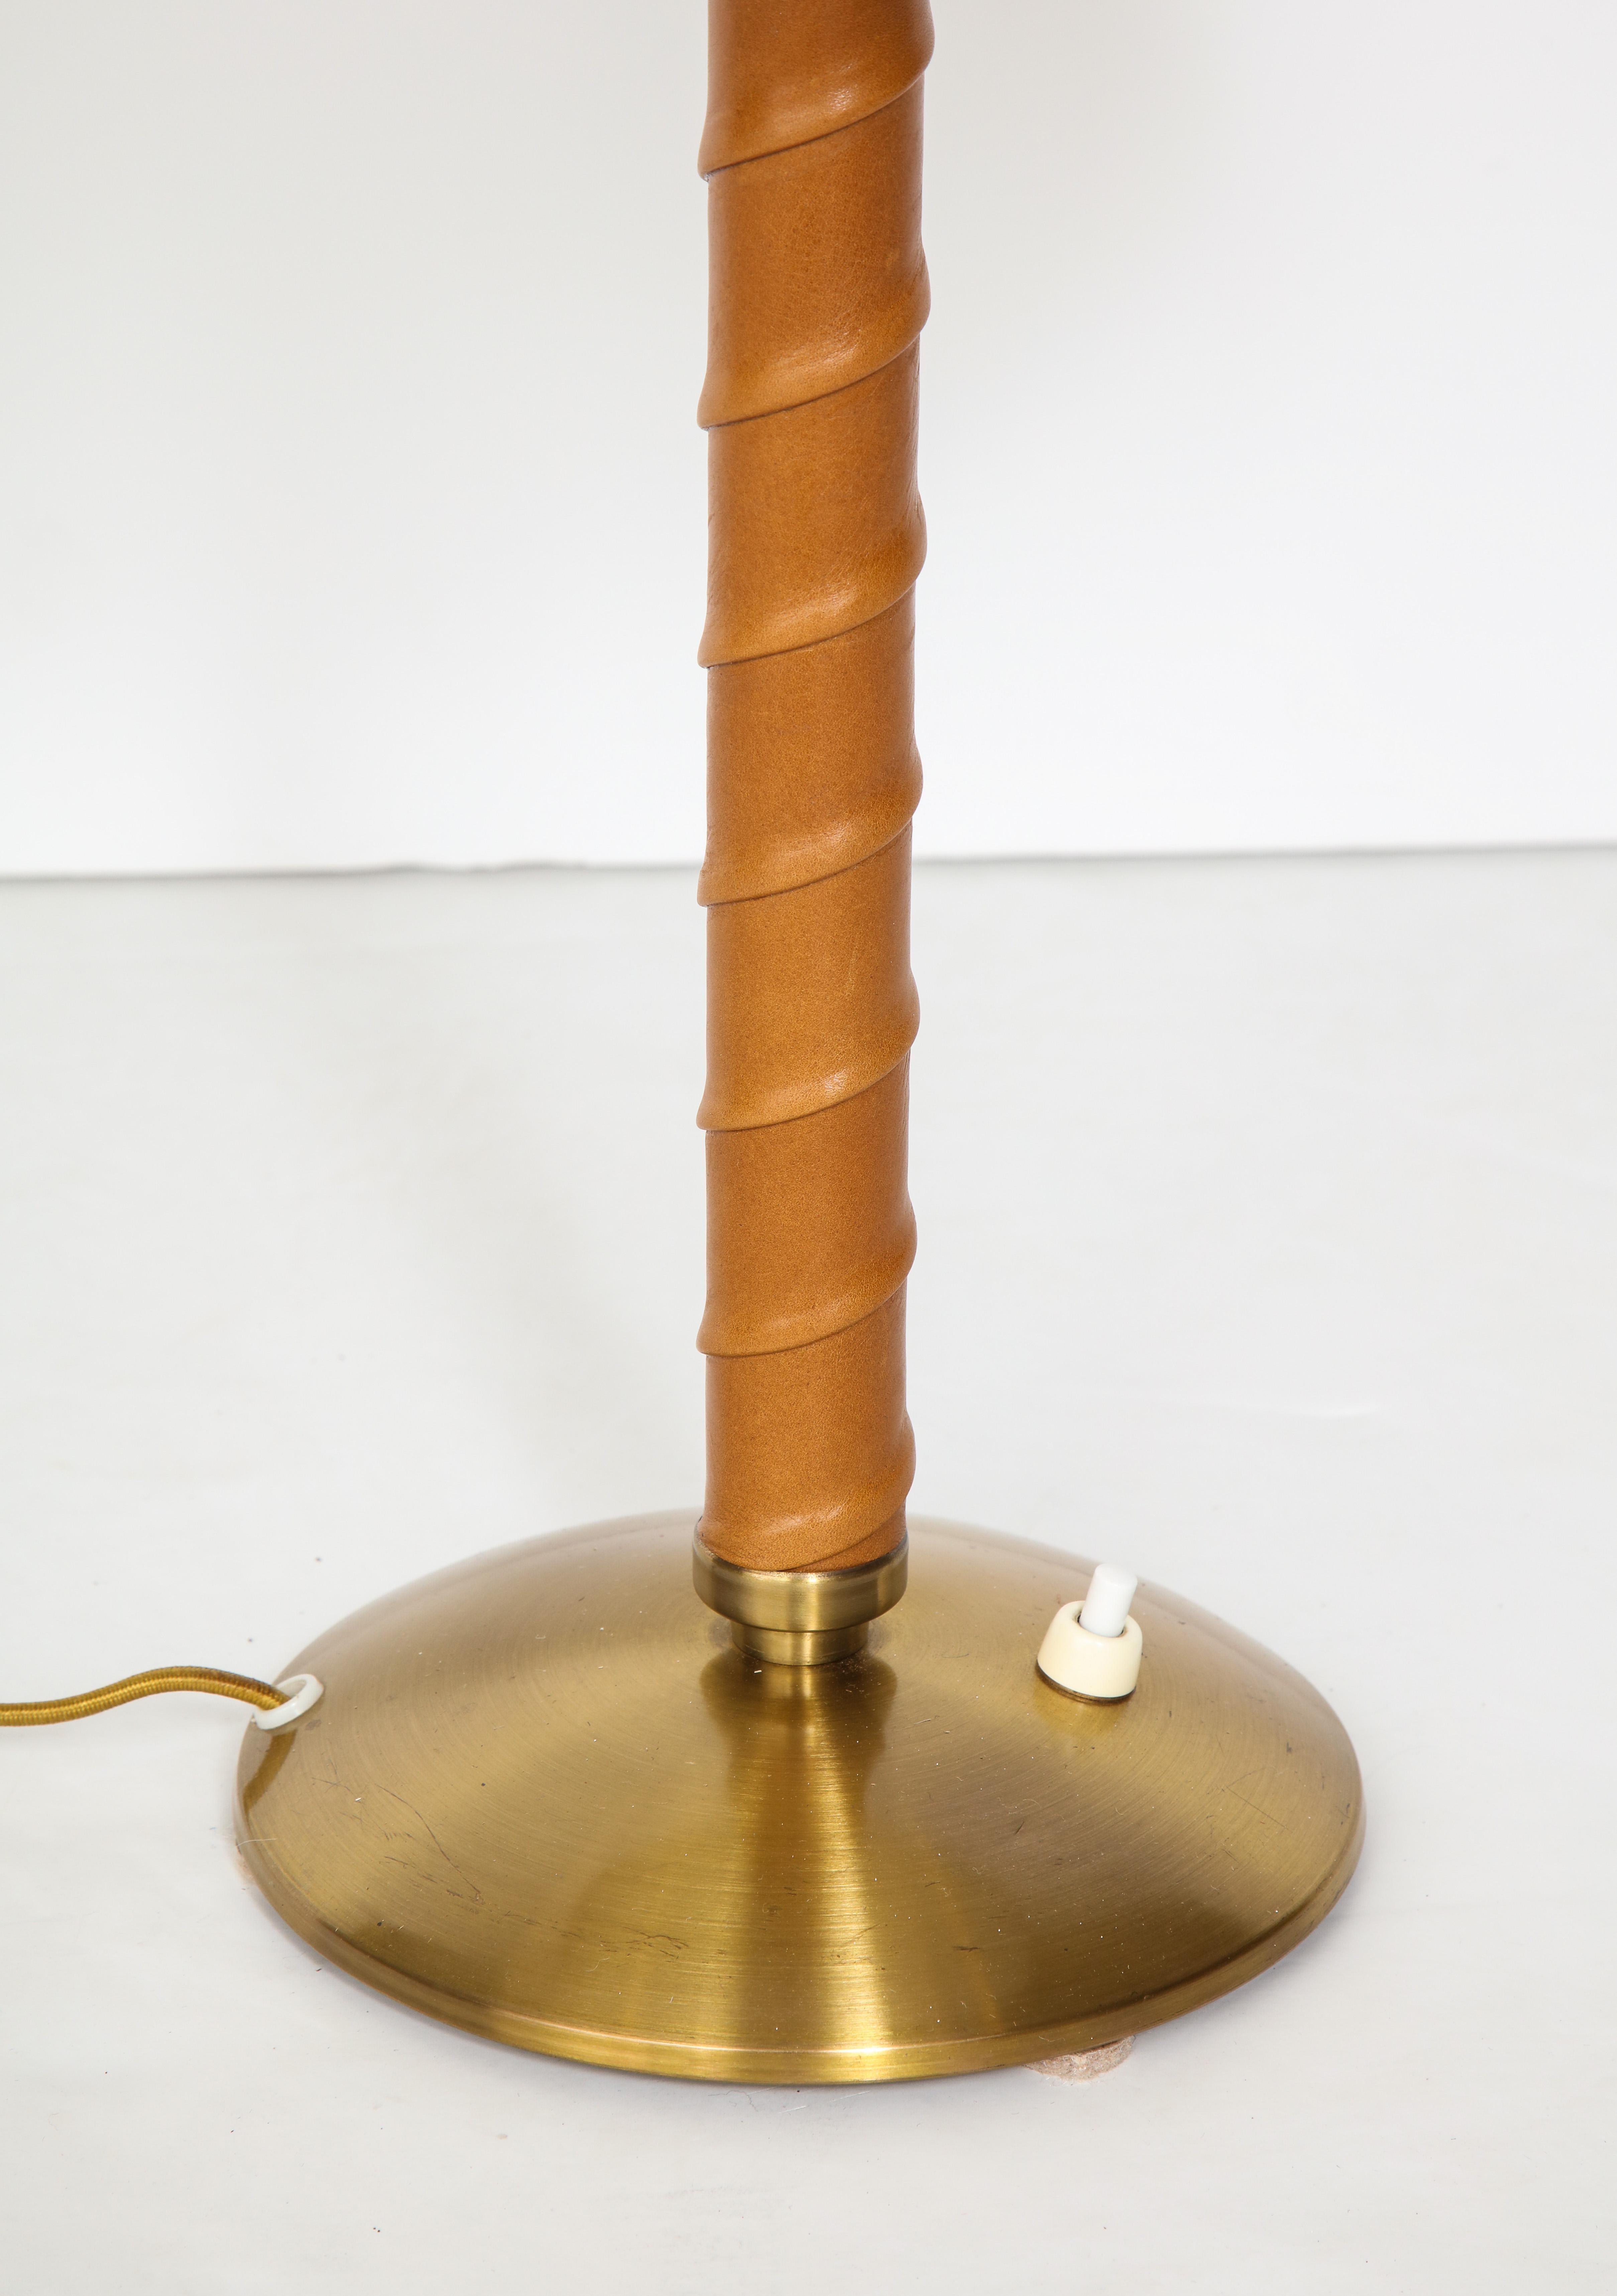 Brass Swedish Table Lamp by Einar Båckström, Malmö, circa 1940s